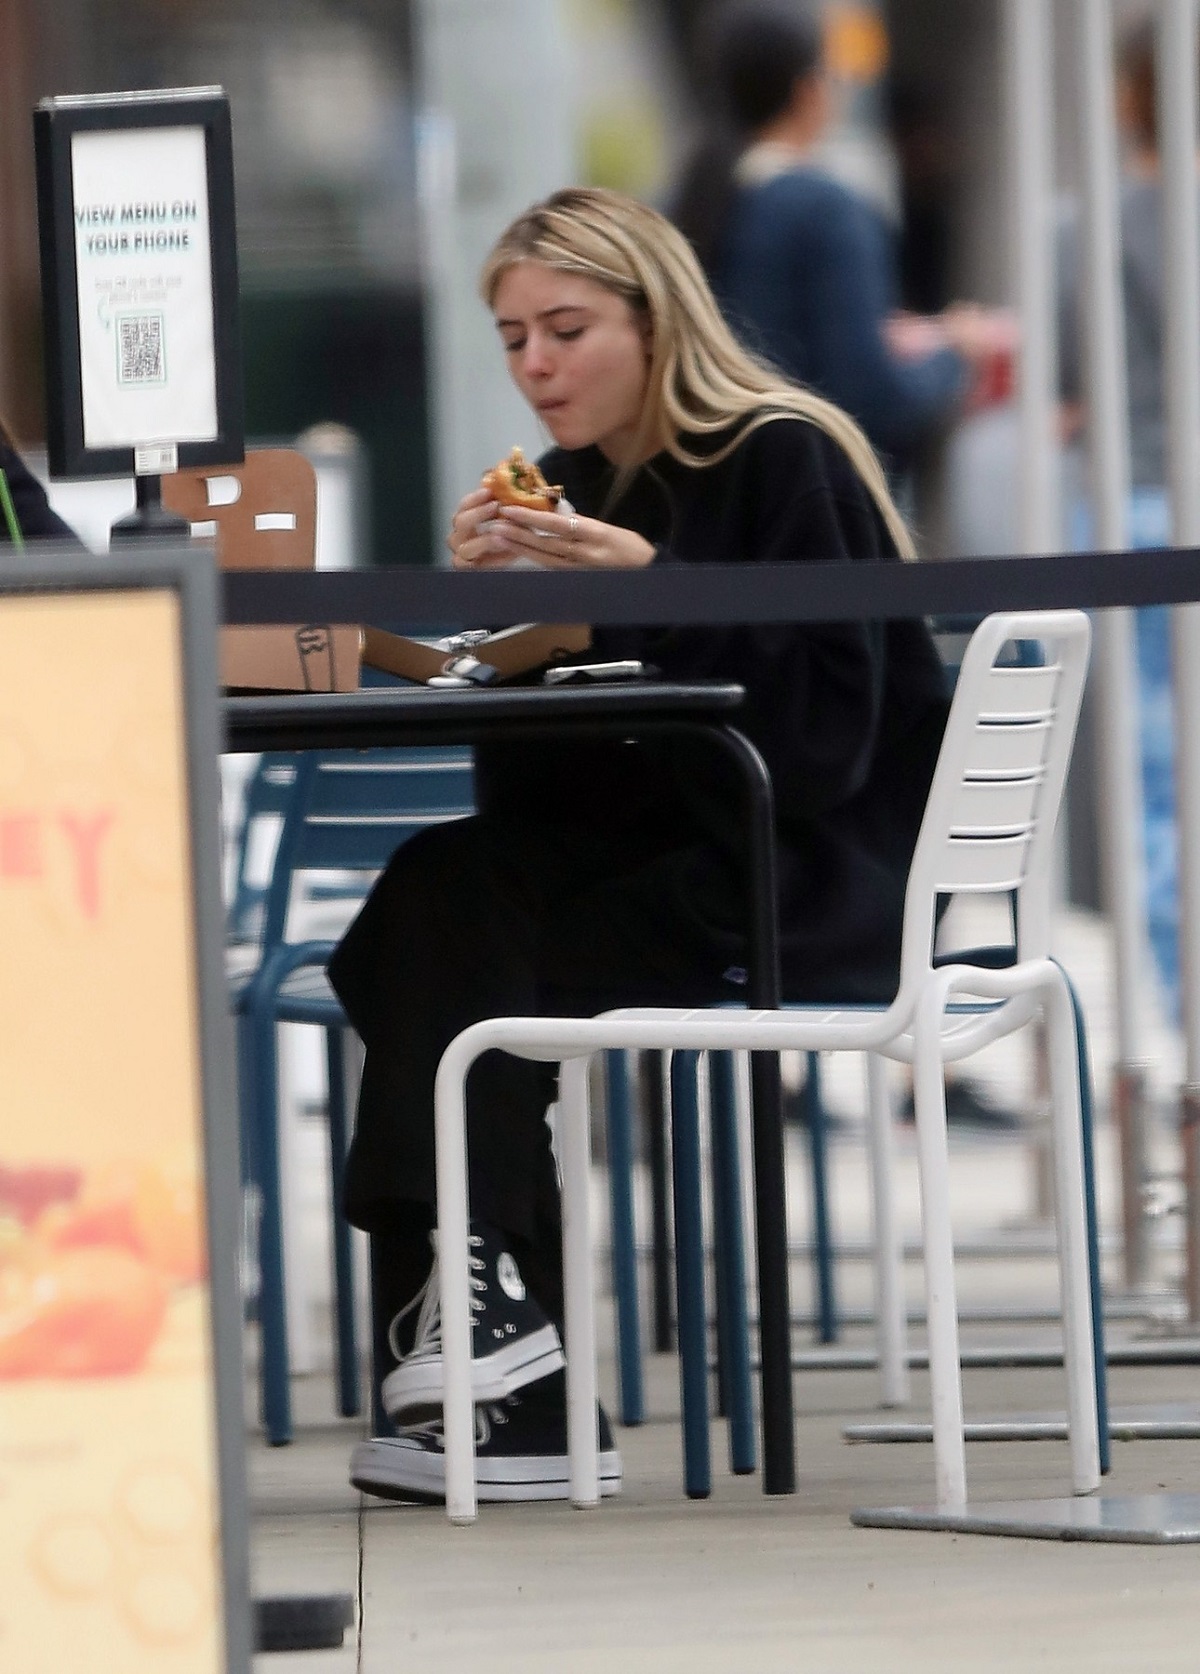 Leni Klum într-un trening negru în timp ce stă la o masă și mănâncă un burger